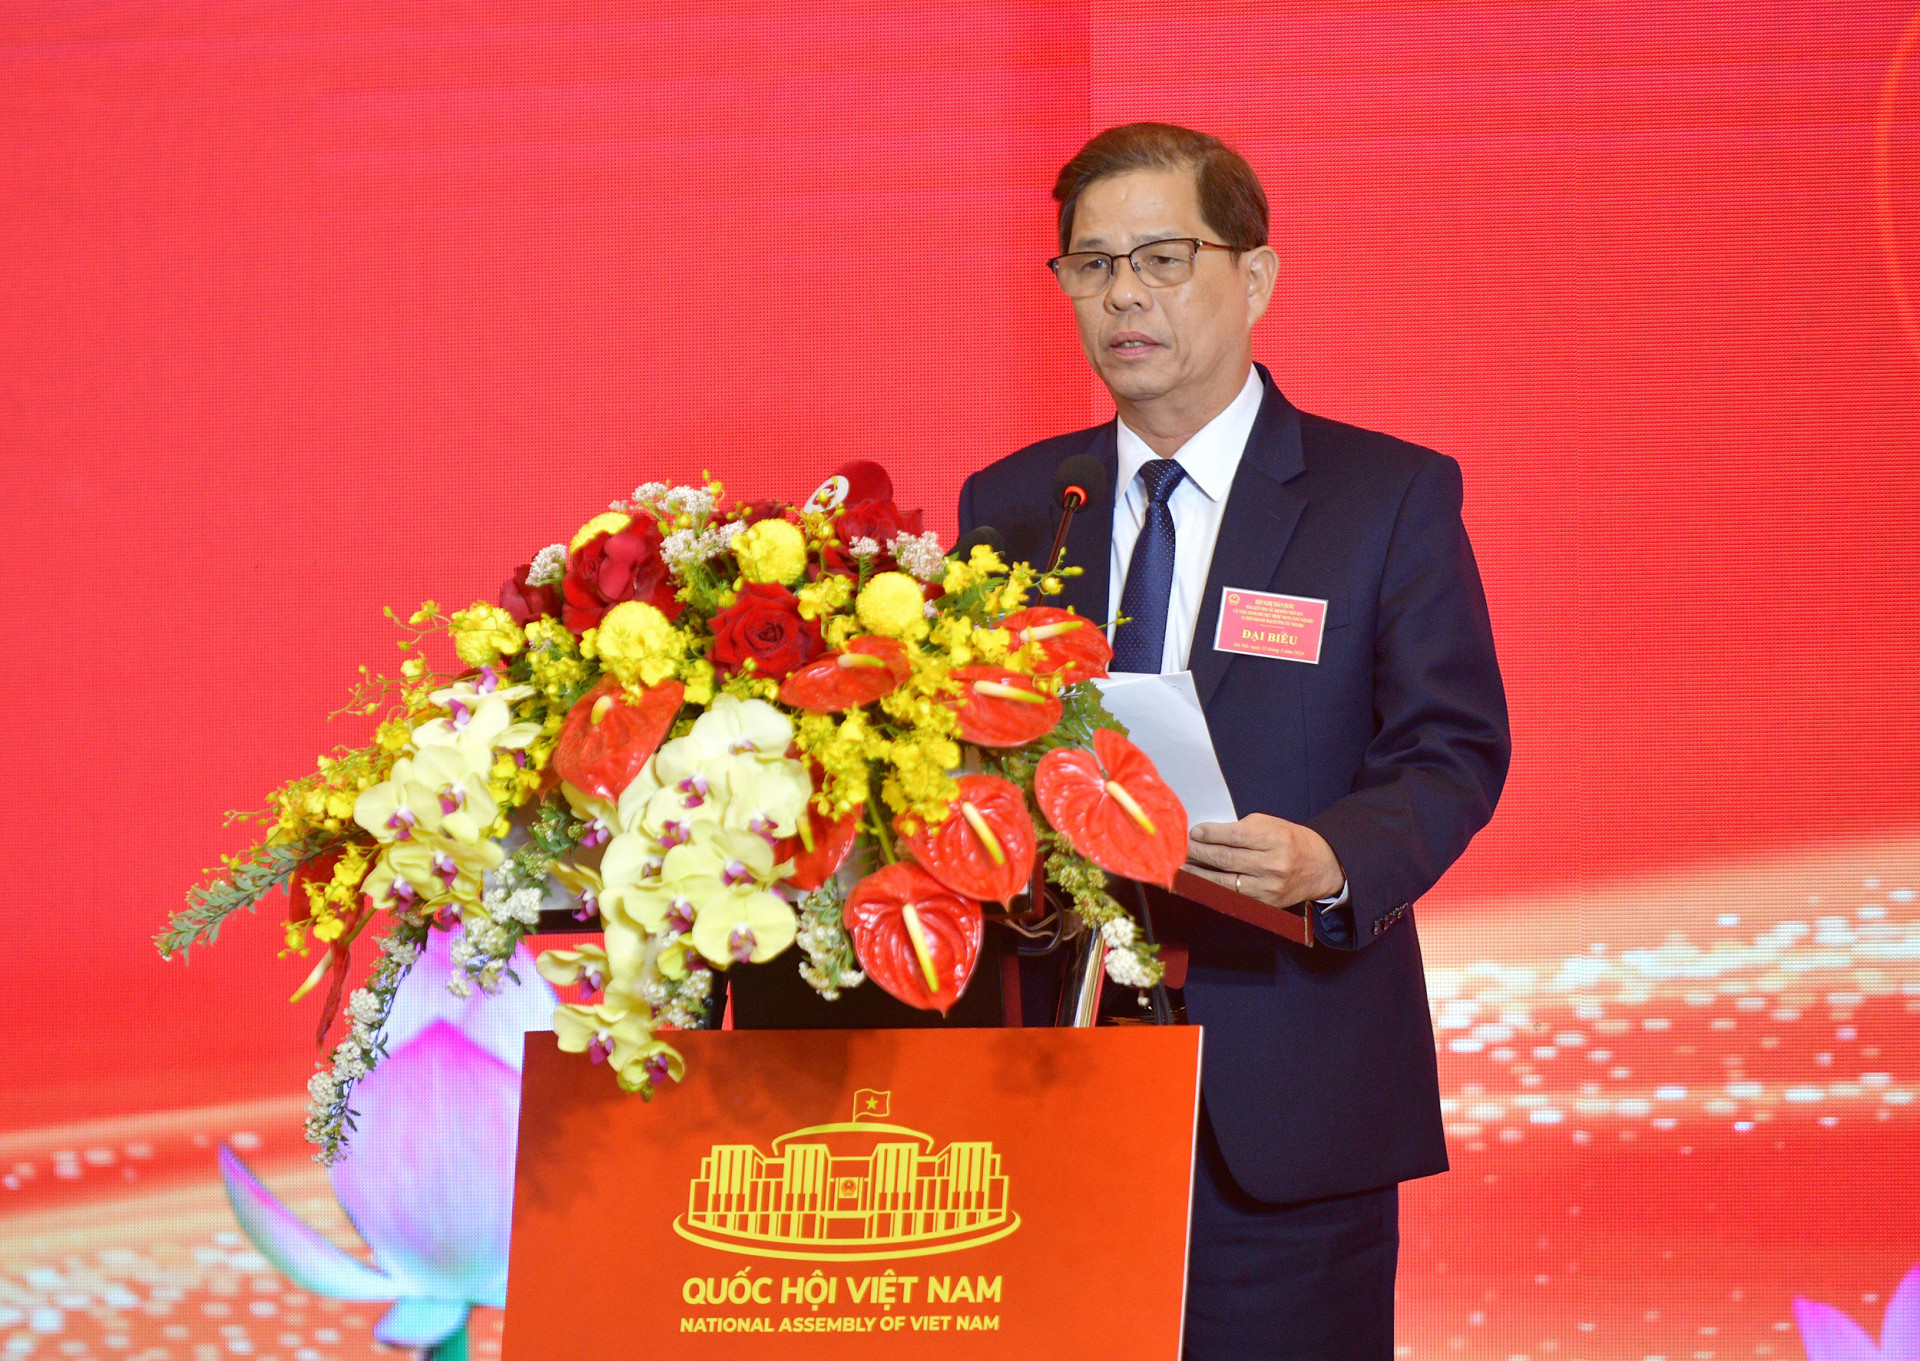 Chủ tịch UBND tỉnh Khánh Hòa phát biểu tham luận tại hội nghị (Ảnh: THANH MAI)

